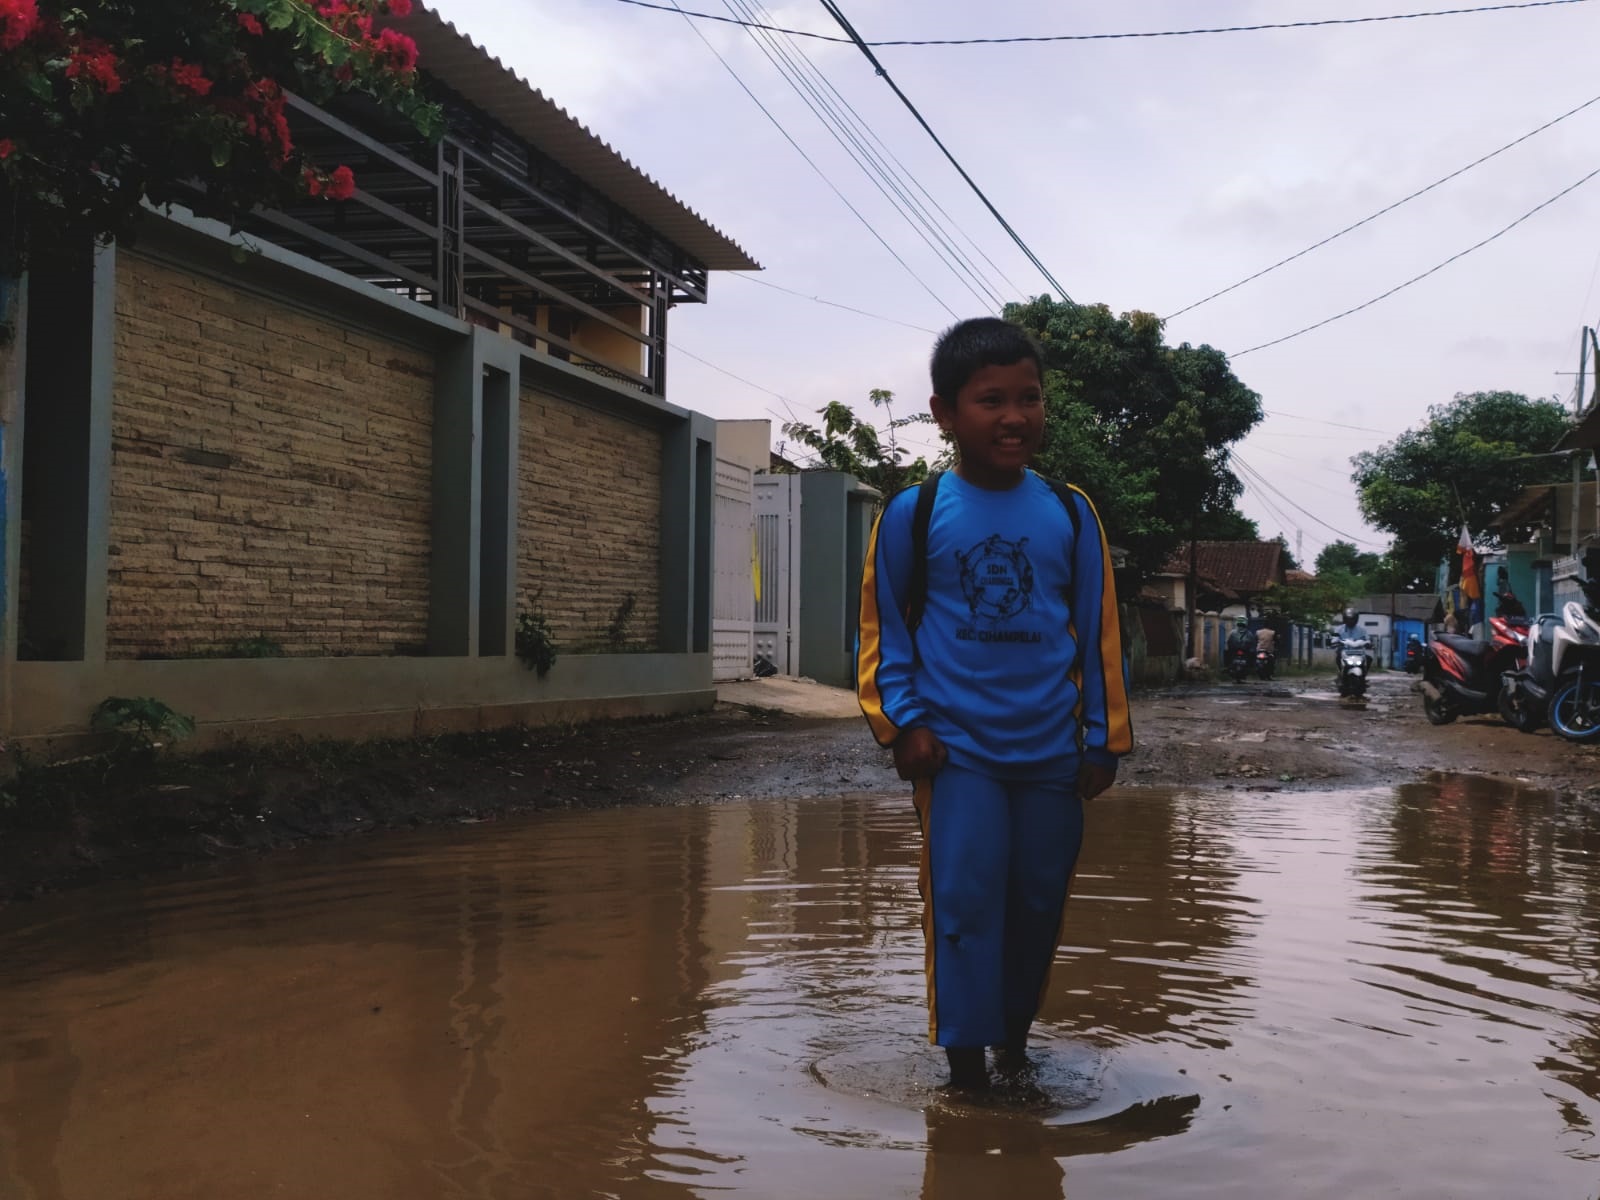 LEWATI KUBANGAN: Seorang anak melintasi jalan berlubang di Desa Mekarmukti Kecamatan Cihampelas, KBB. (Akmal Firamsnyah/Jabar Ekspres)